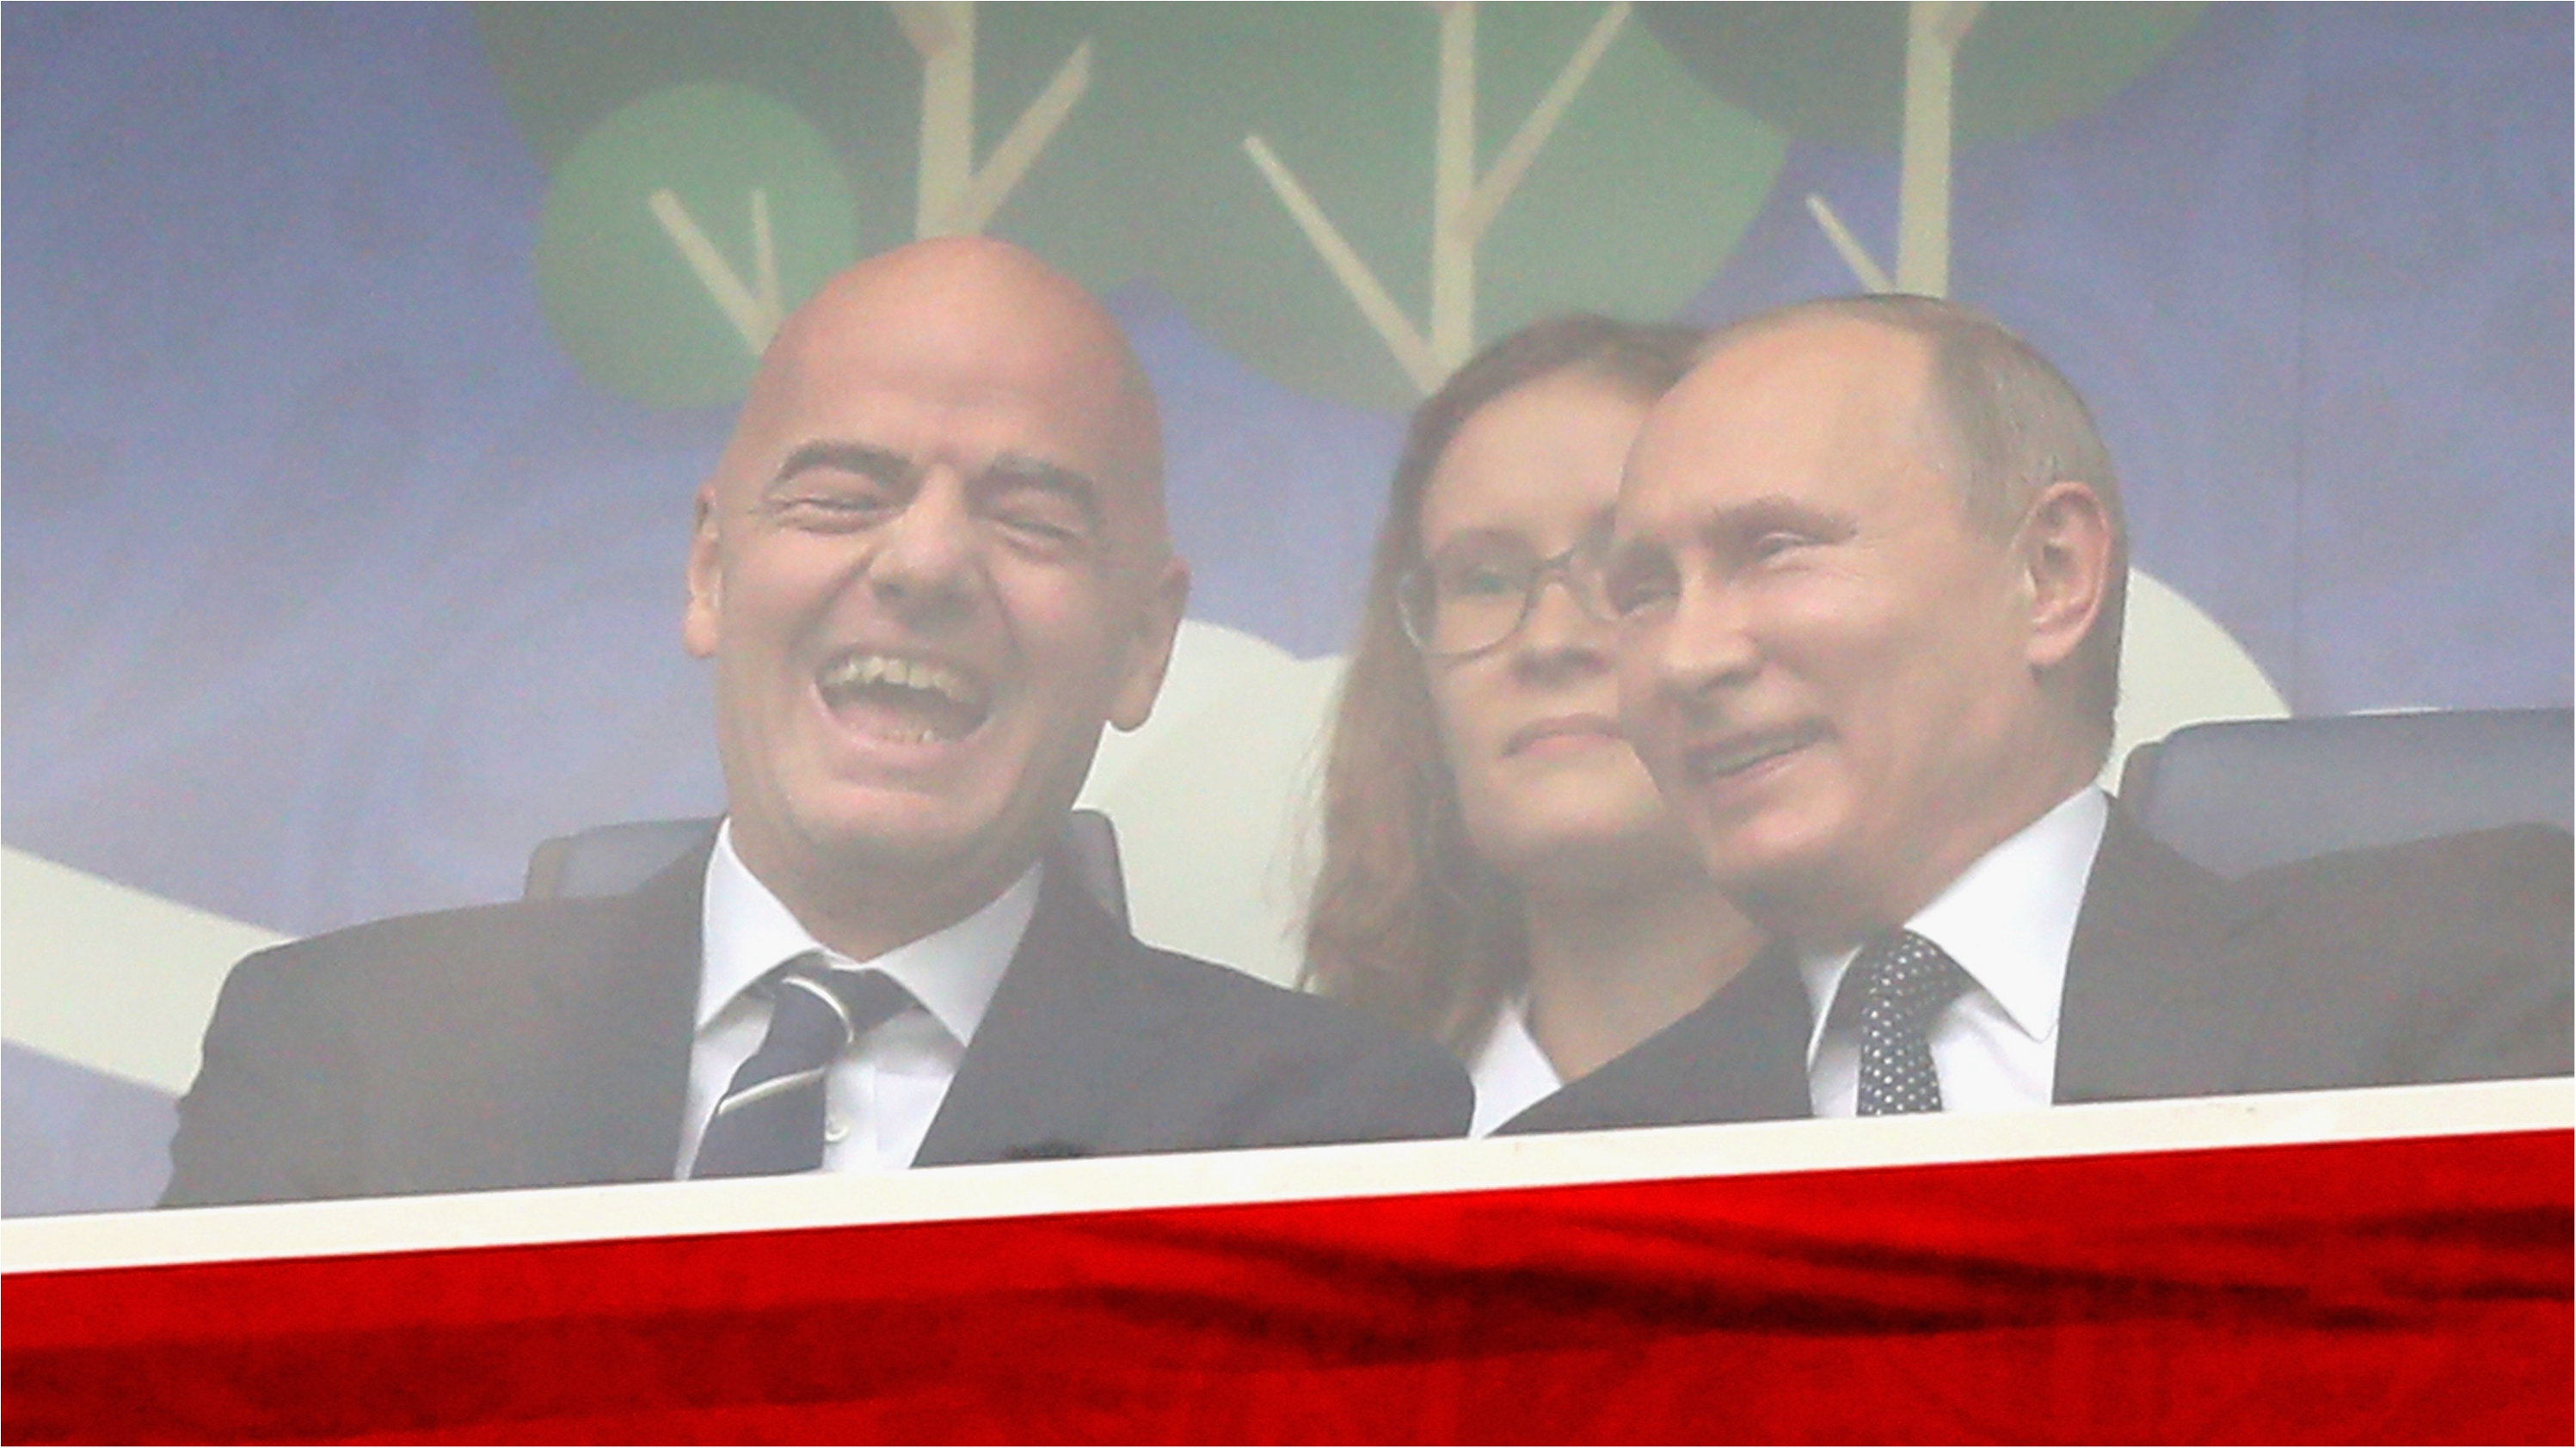 Глава ФИФА Джанни Инфантино узнает о новом витке санкций против России - фото 1